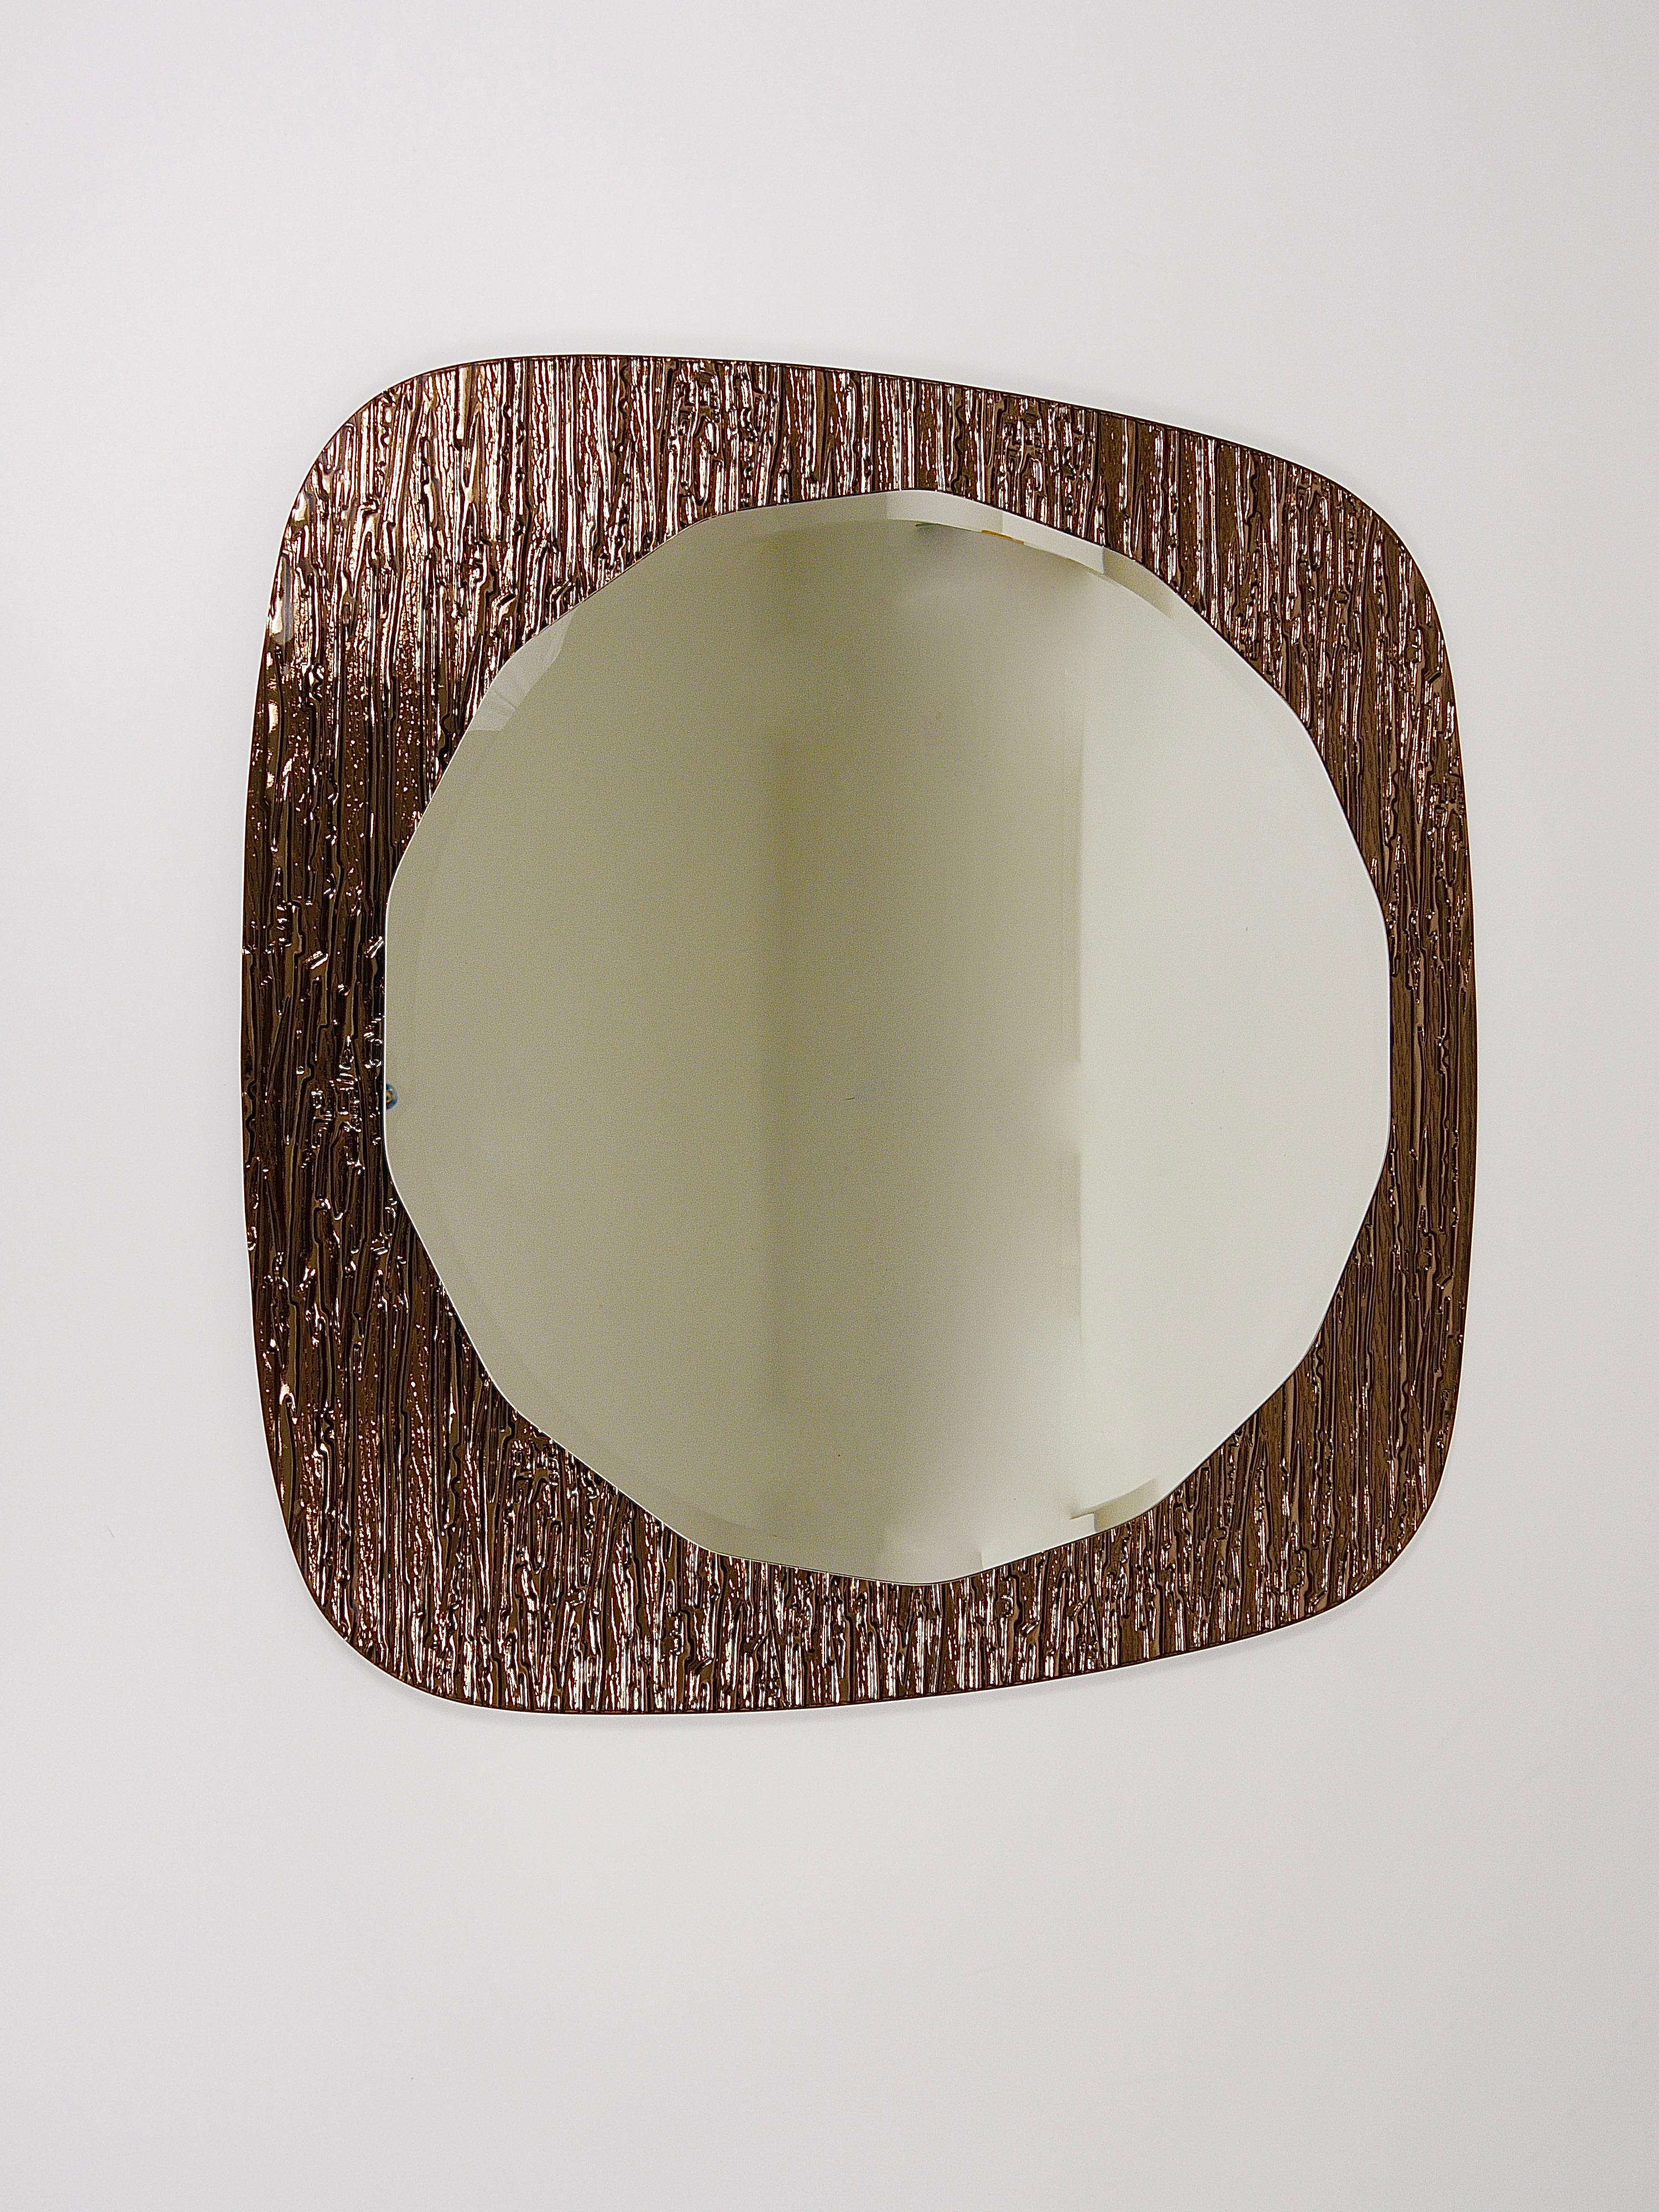 Ein beeindruckender und hochwertiger italienischer Wandspiegel mit zwei Ebenen aus den 1960er Jahren, hergestellt in Italien von Cristal Arte / Crystal Arte. Der runde, facettierte Spiegel befindet sich auf einer braunen, bronzefarbenen,